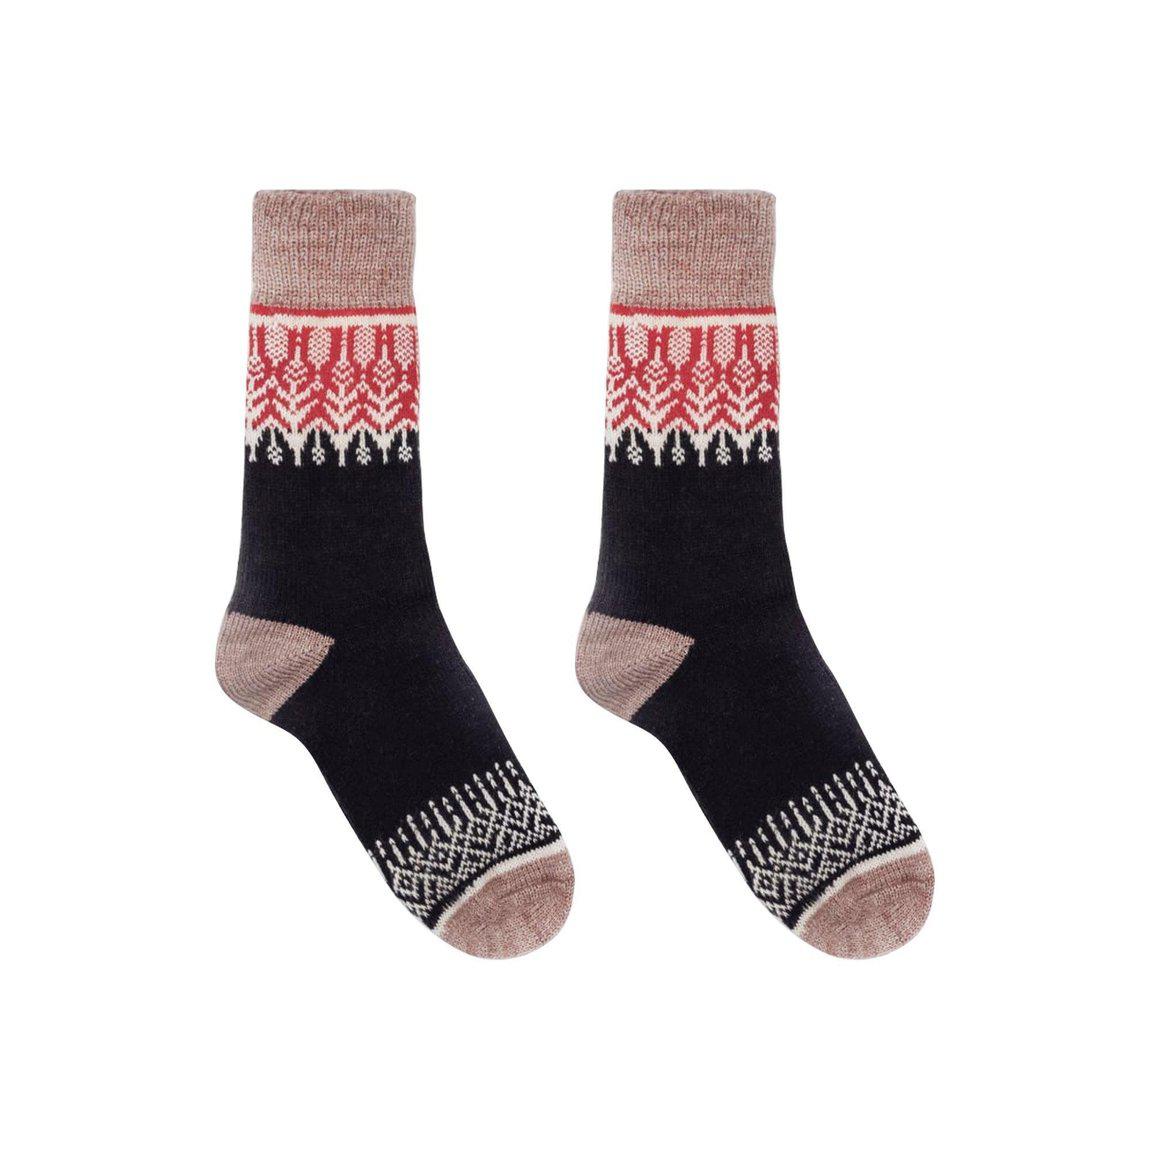 Nordic Socks Merino Wool in PERFORM™ (Yule - Sunset) - Unisex